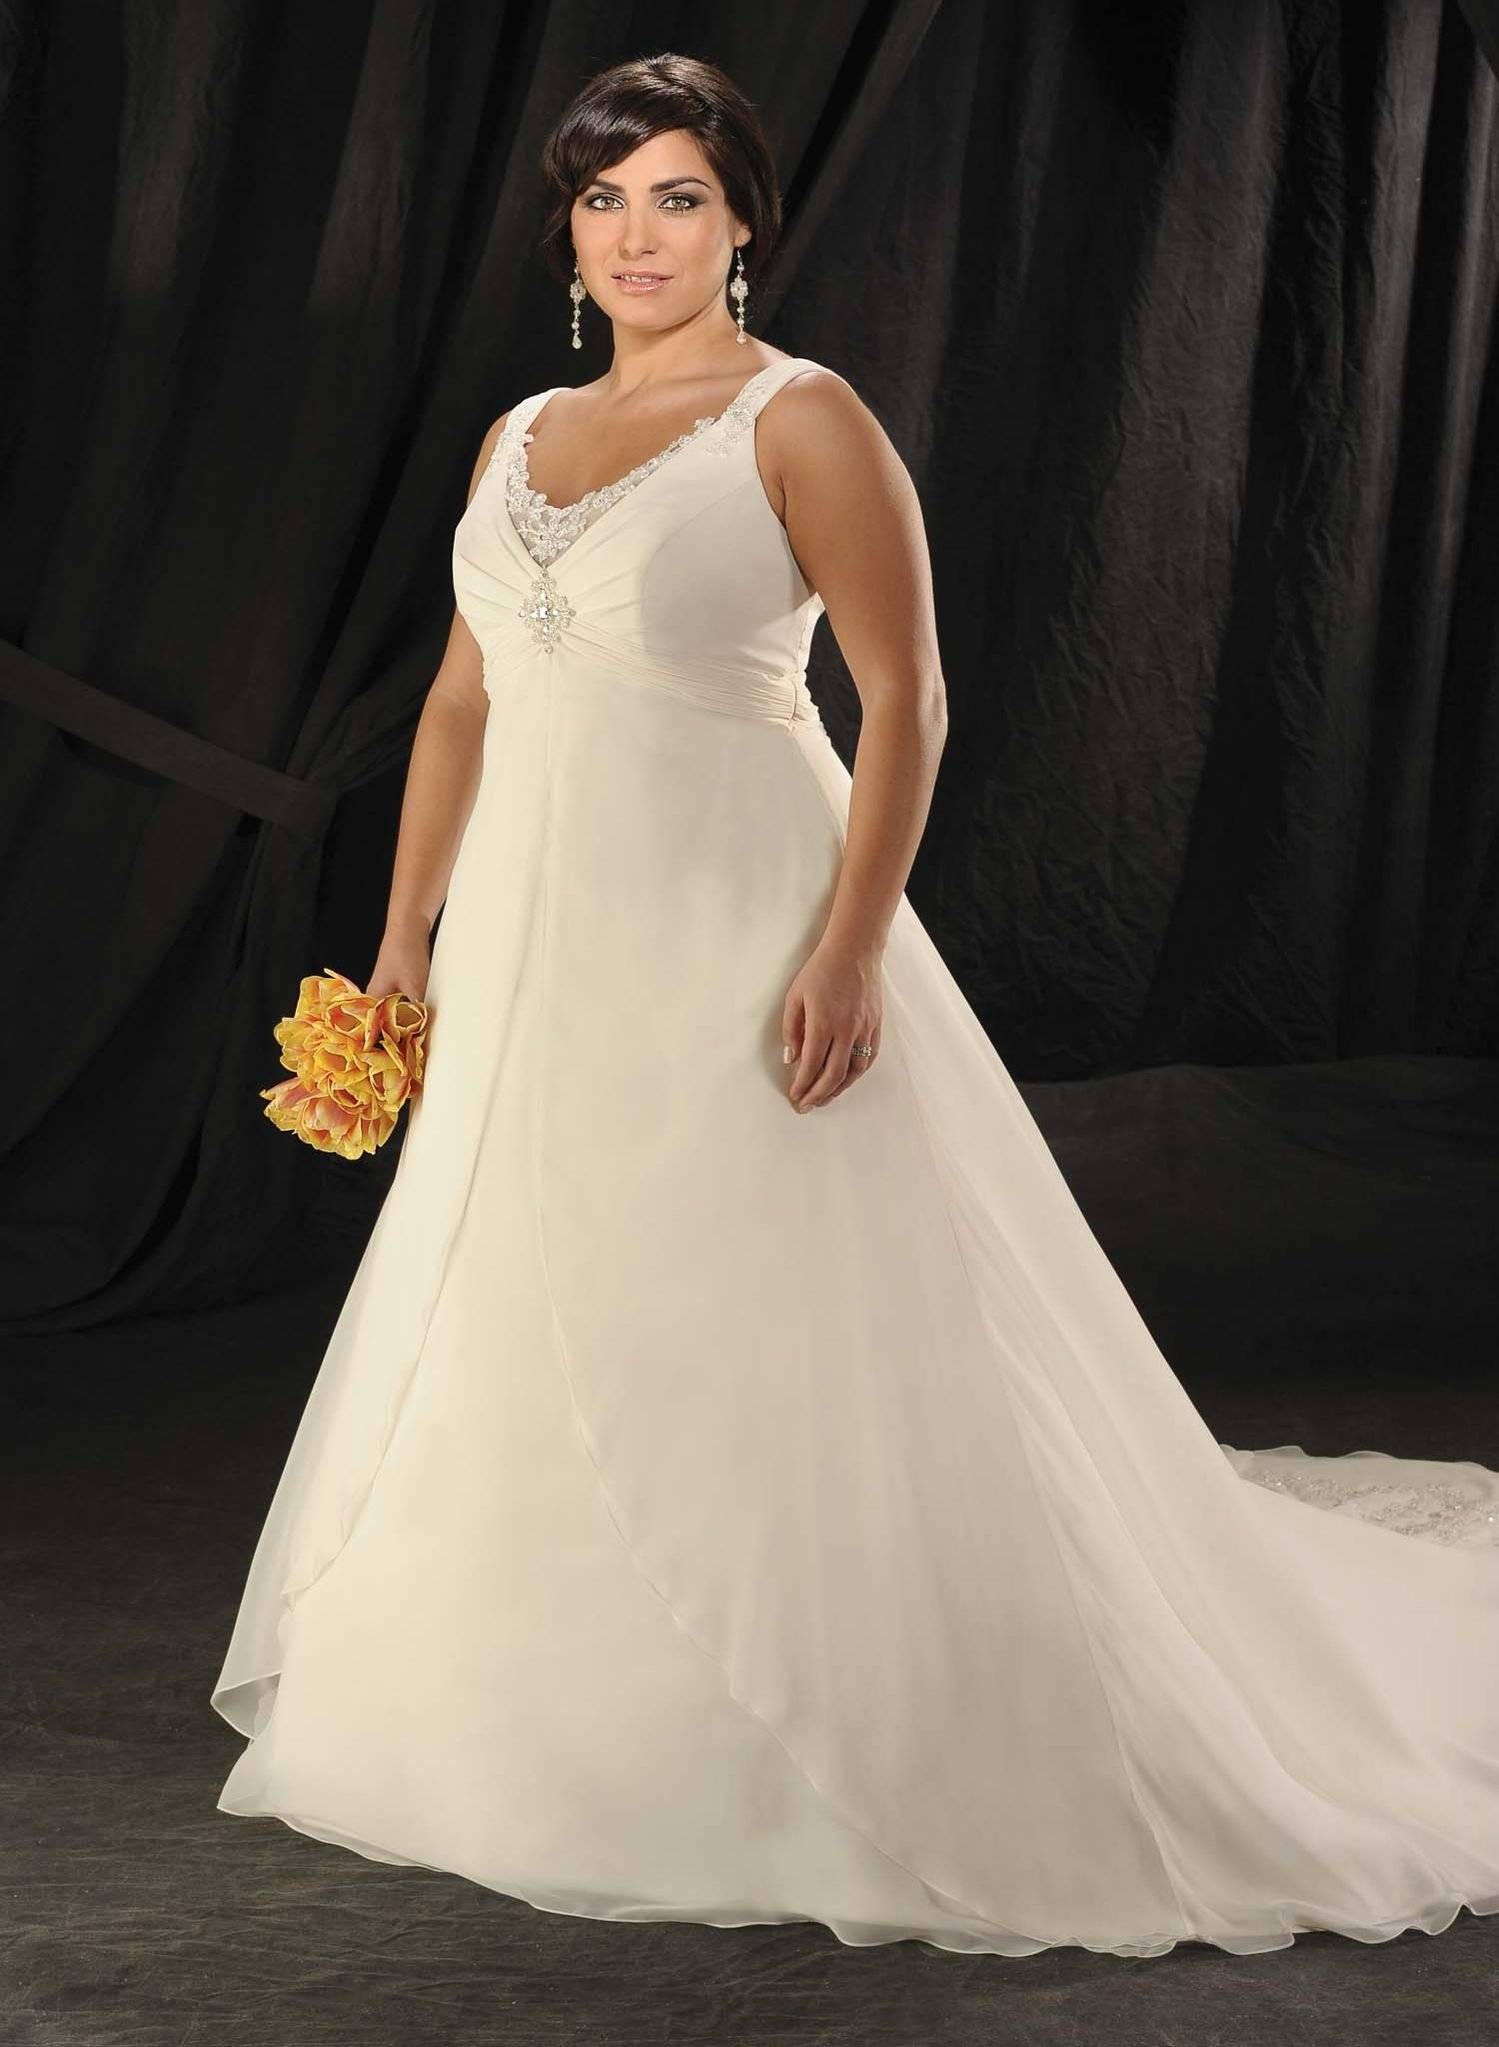 Свадебные платья для полных девушек - фото и критерии выбора